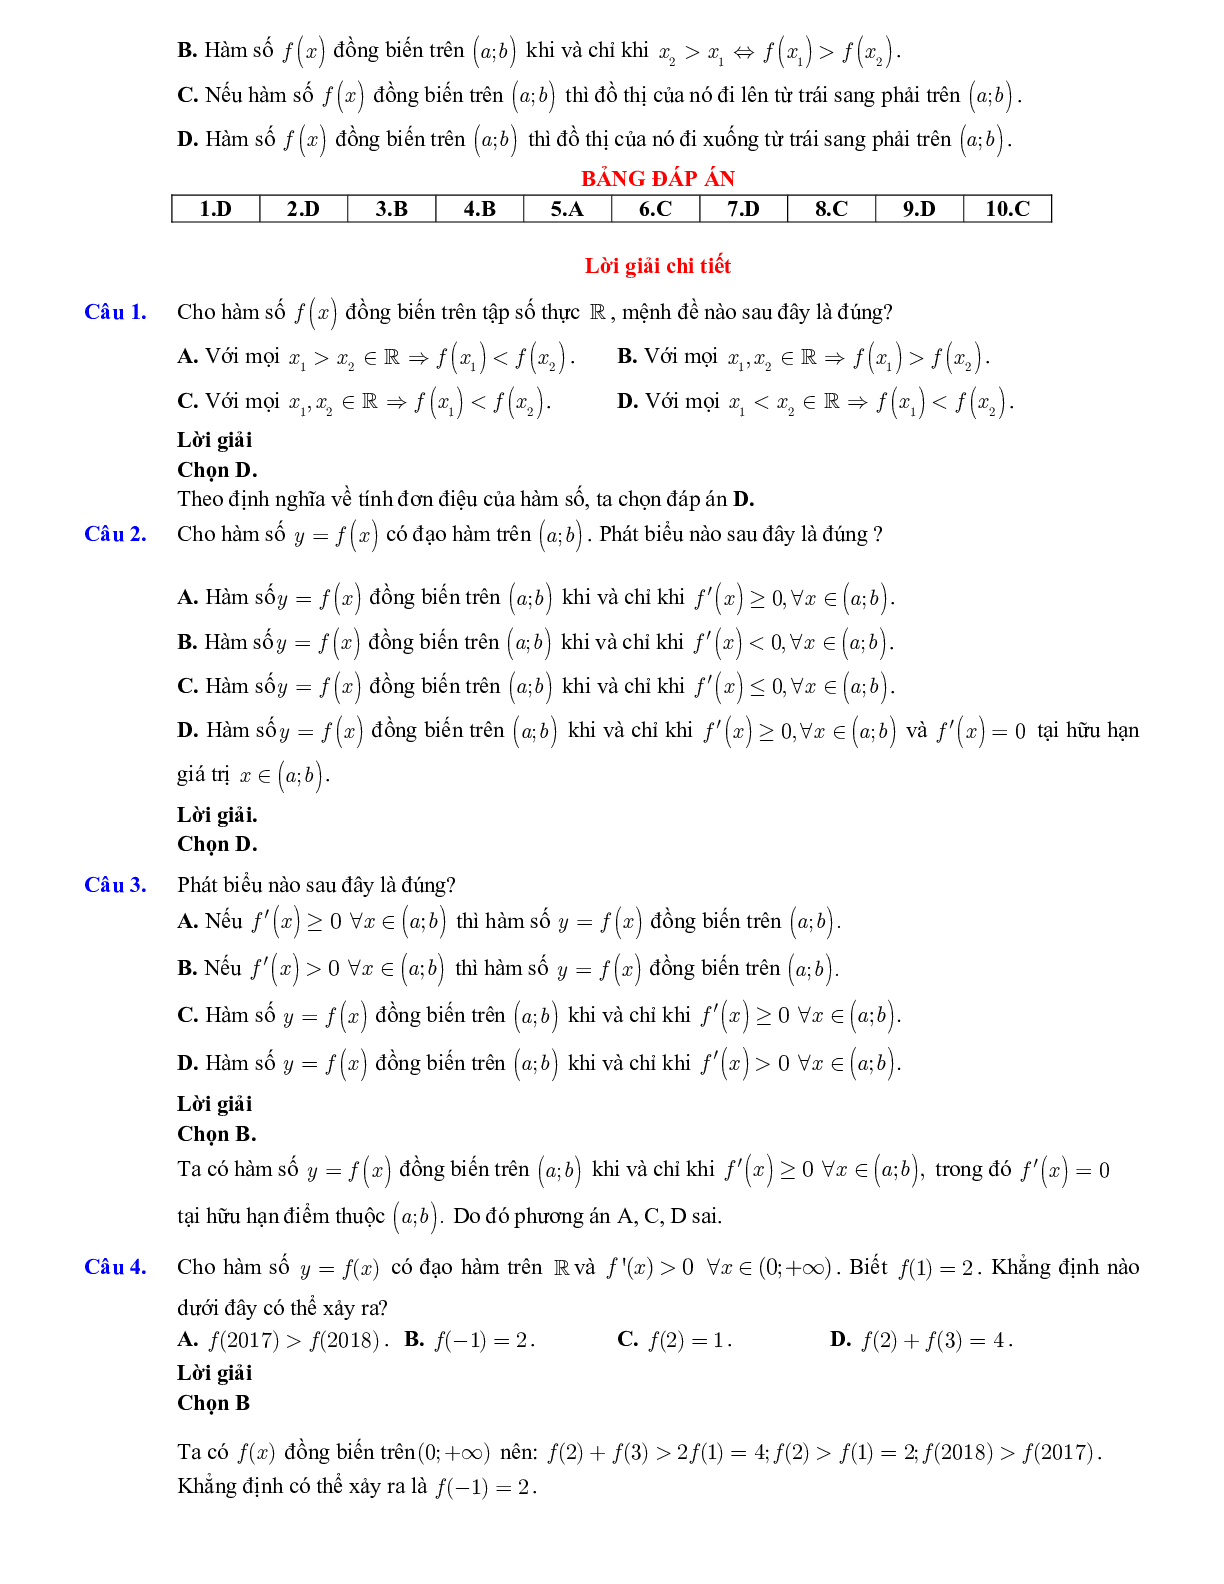 Lý thuyết và bài tập xét tính đơn điệu của hàm số ôn thi THPTQG (trang 4)